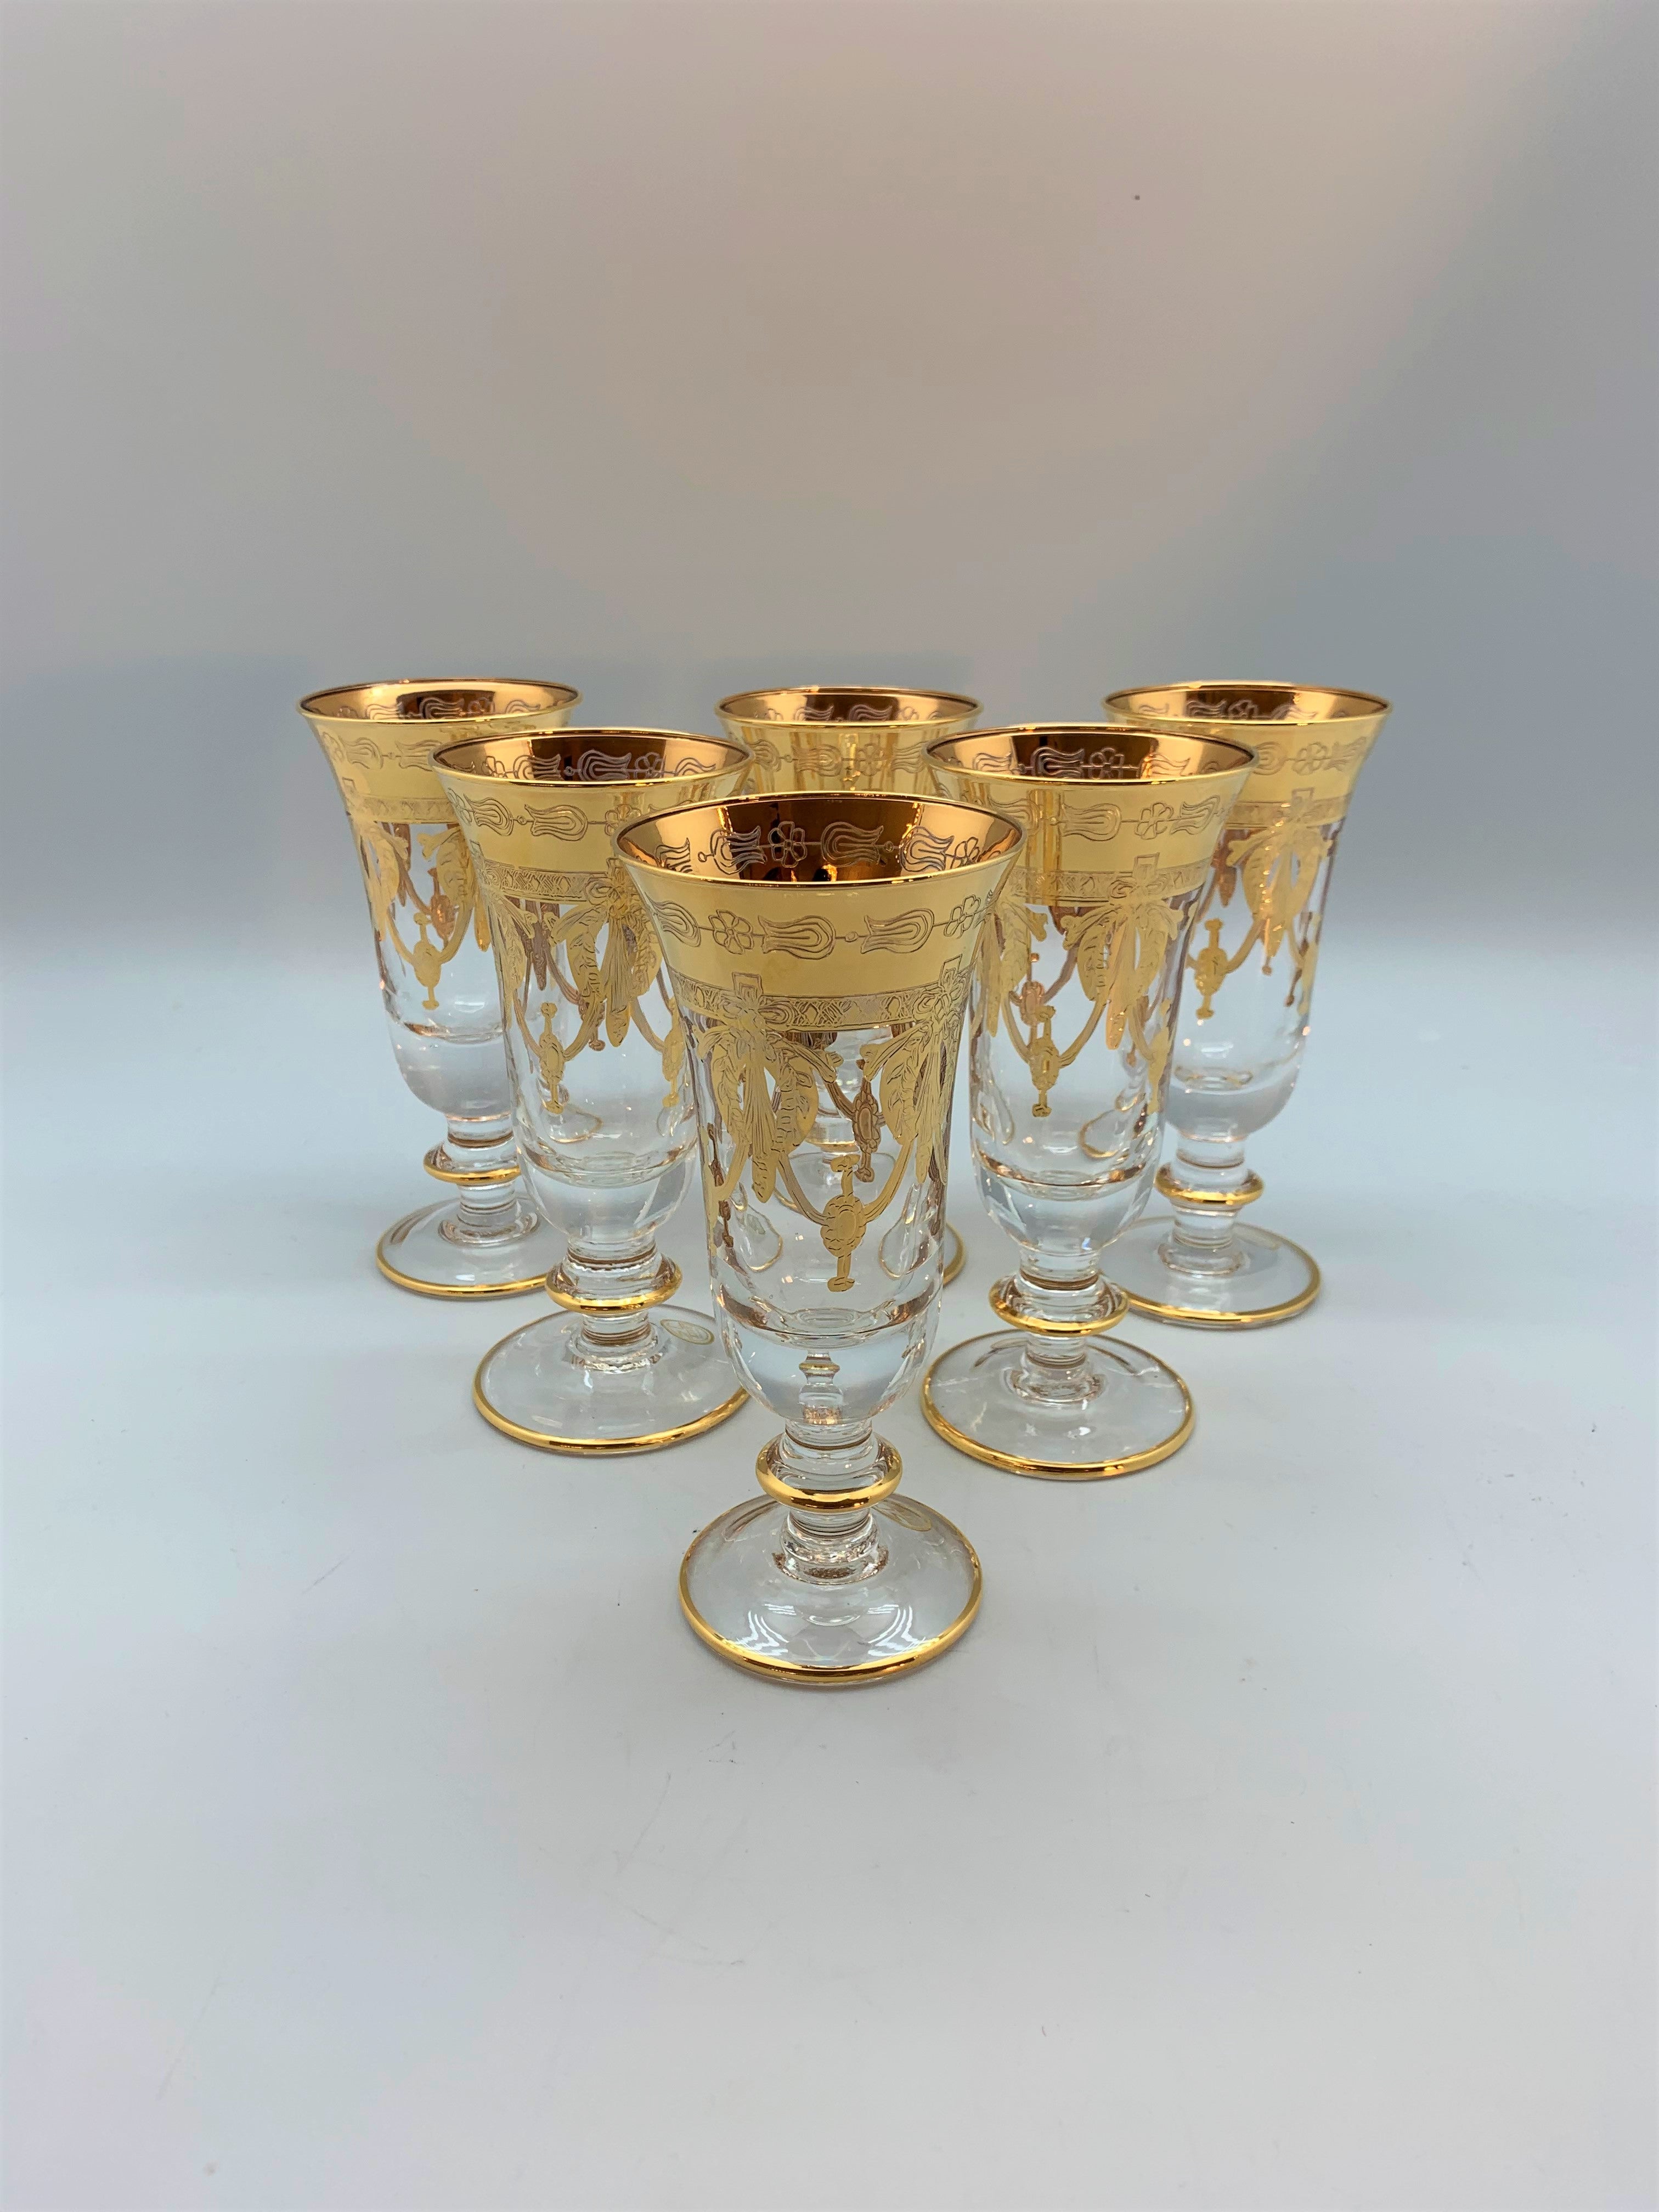 Exclusive Murano sparkling wine glasses